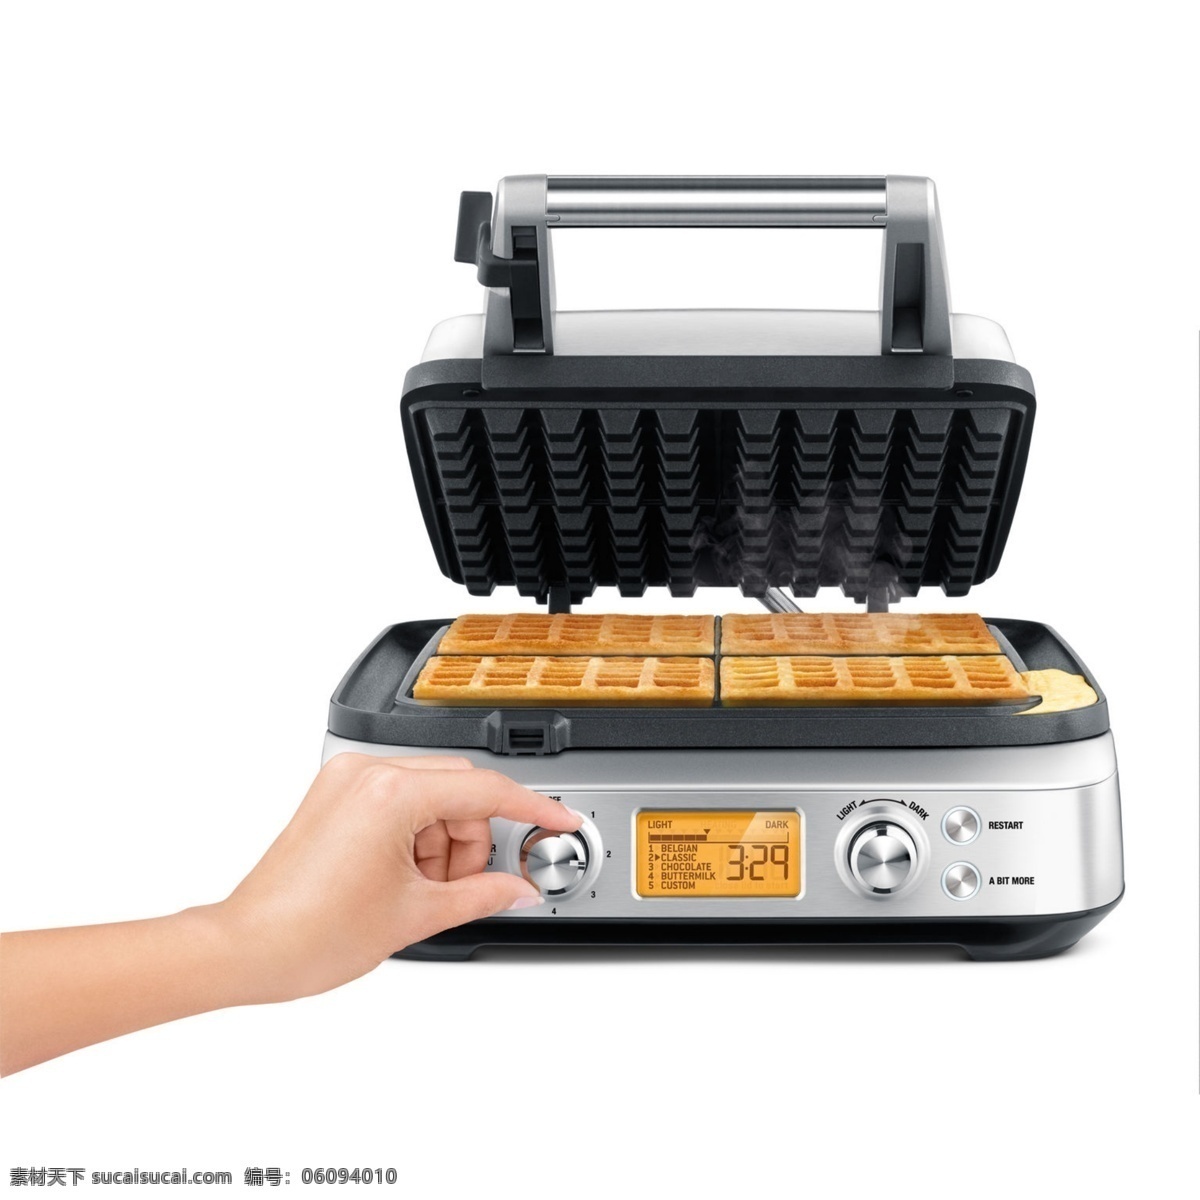 煎 烤 食物 面包 烤箱 调温 美味 饼干 烘烤 机器 科技 煎烤